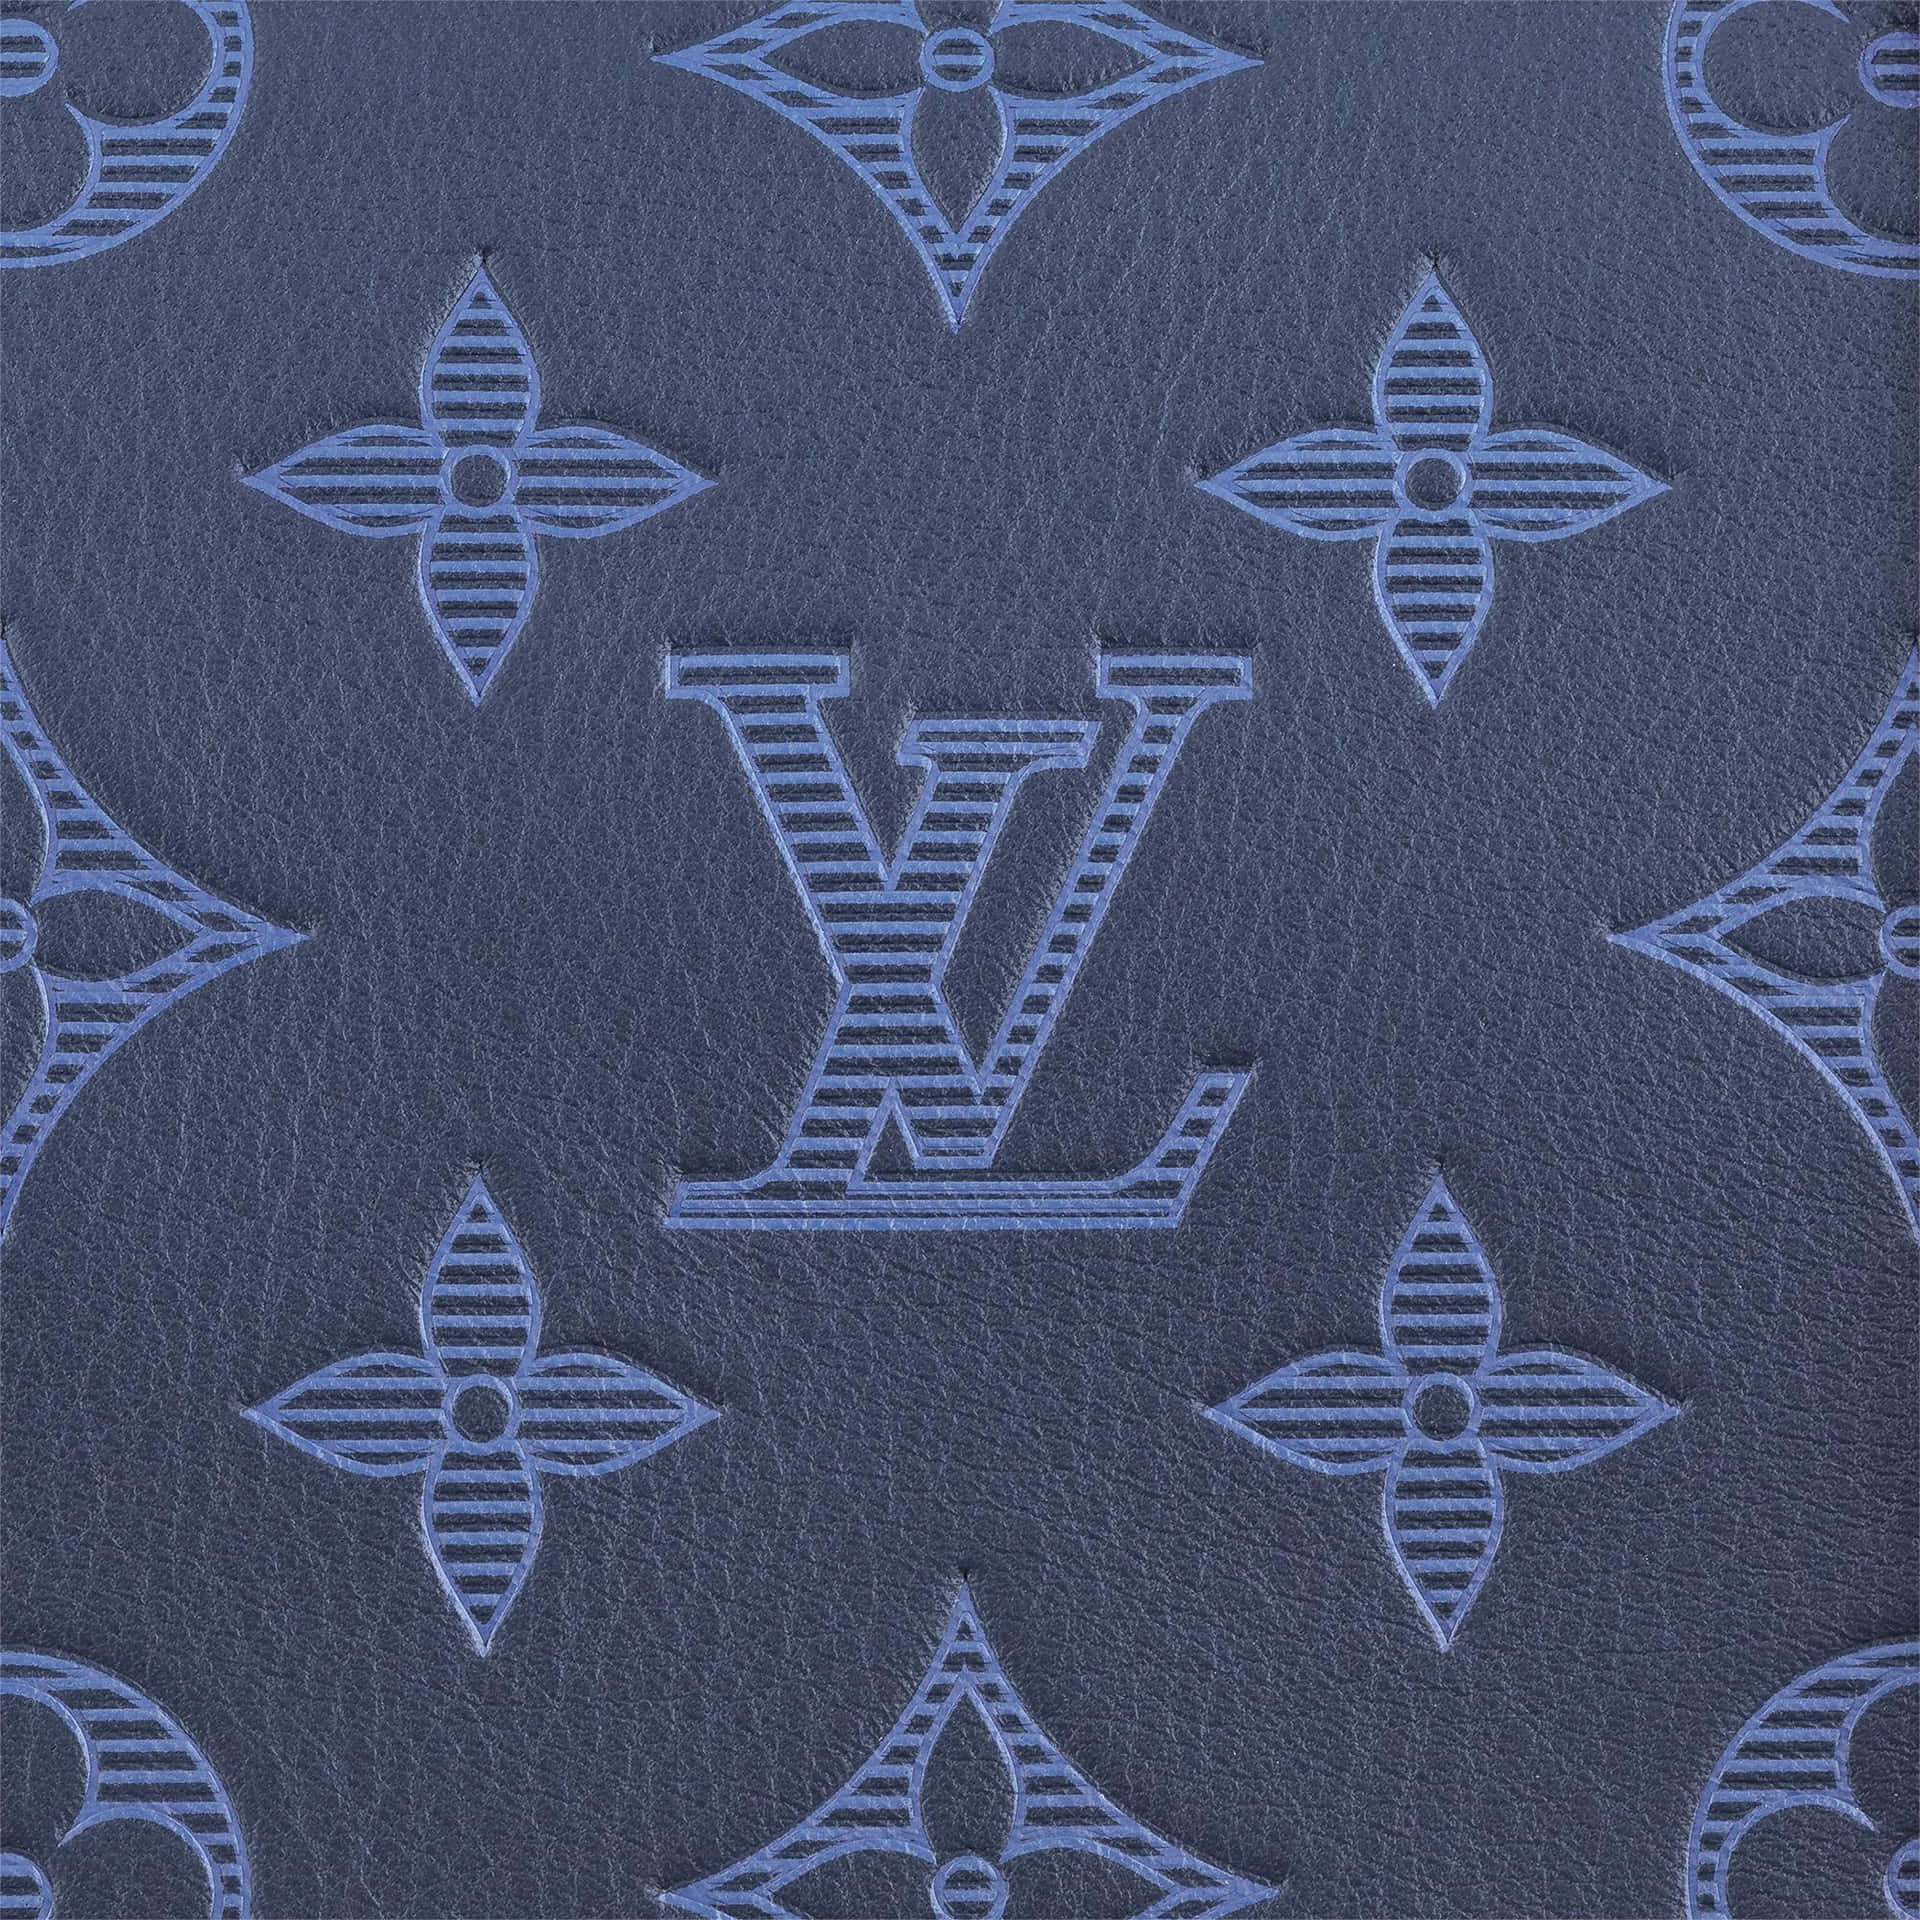 Stærk og moderne: klassisk Louis Vuitton-stil. Wallpaper